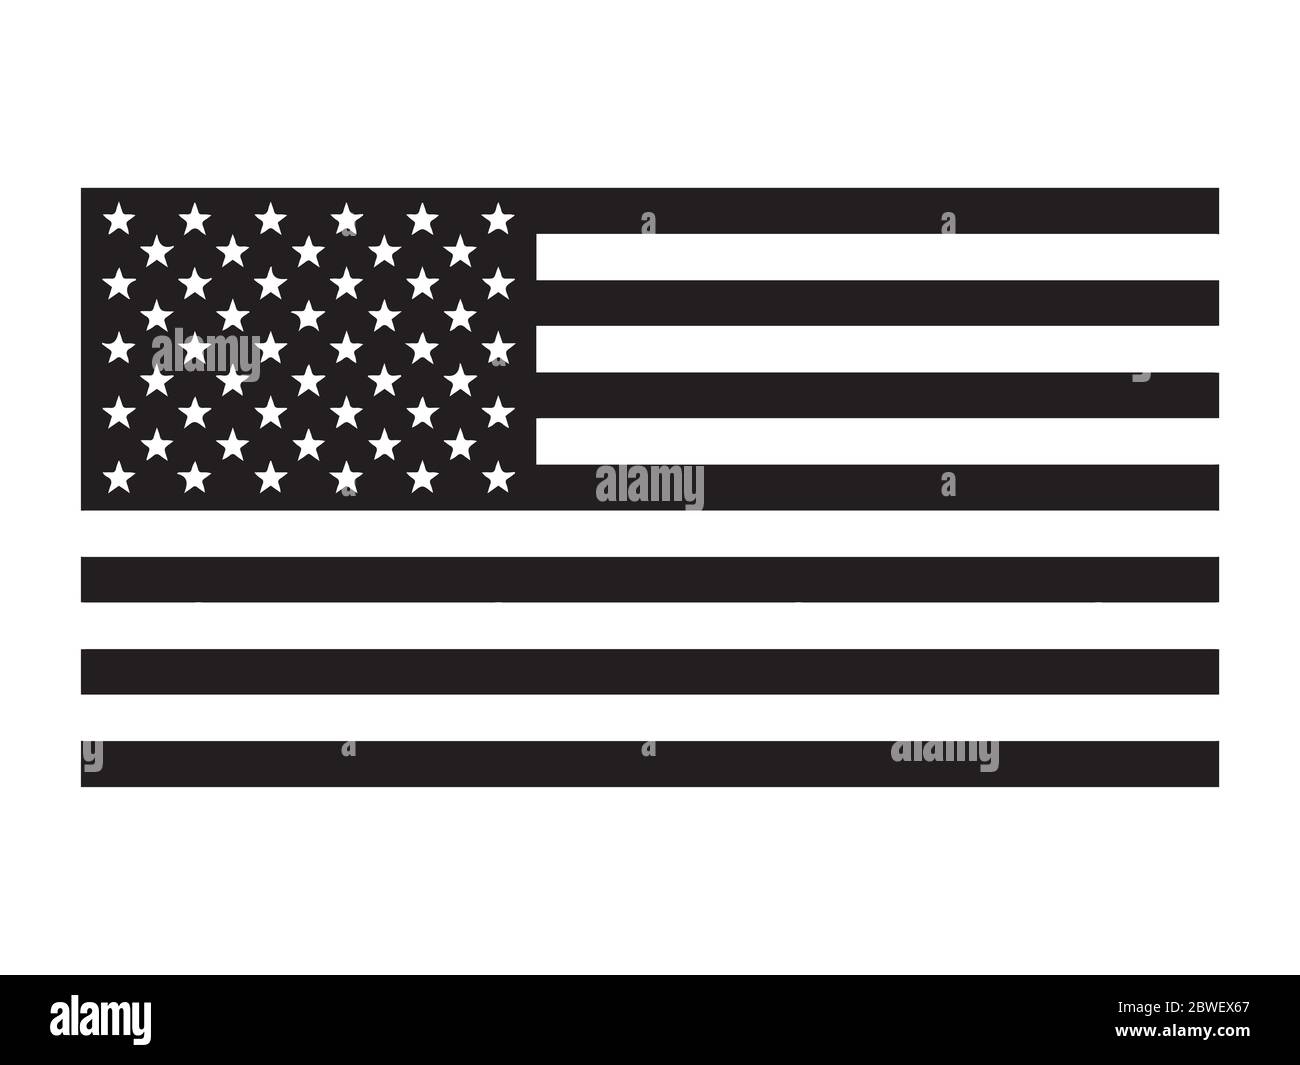 Drapeau des États-Unis d'Amérique. Pictogramme représentant le drapeau américain américain des États-Unis. La bannière en étoile. Vecteur EPS Illustration de Vecteur